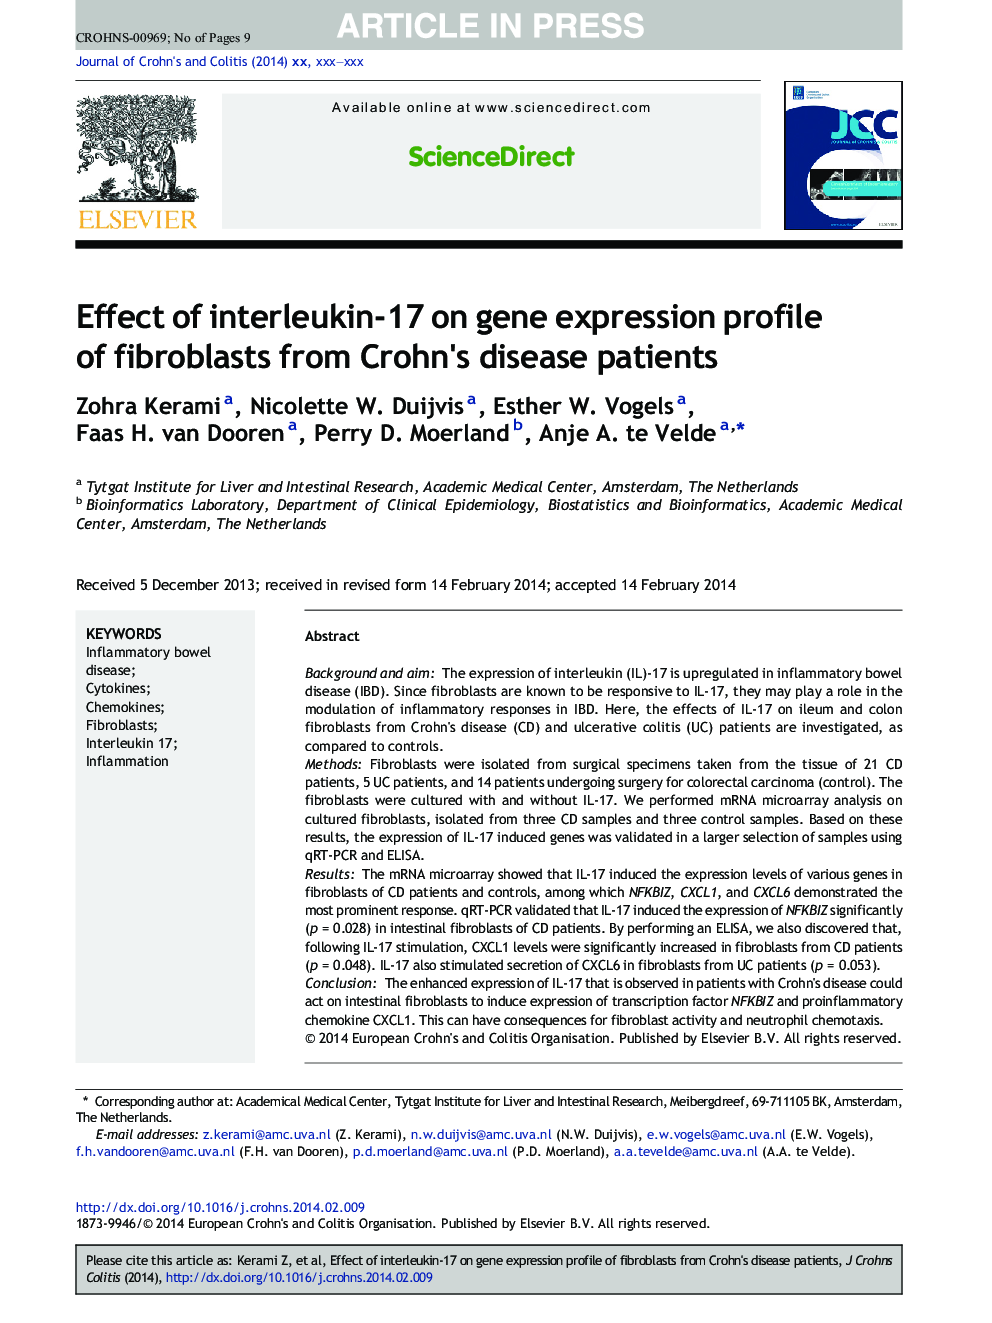 اثر اینترلوکین 17 بر مشخصات بیان ژن فیبروبلاست ها از بیماران کرون 